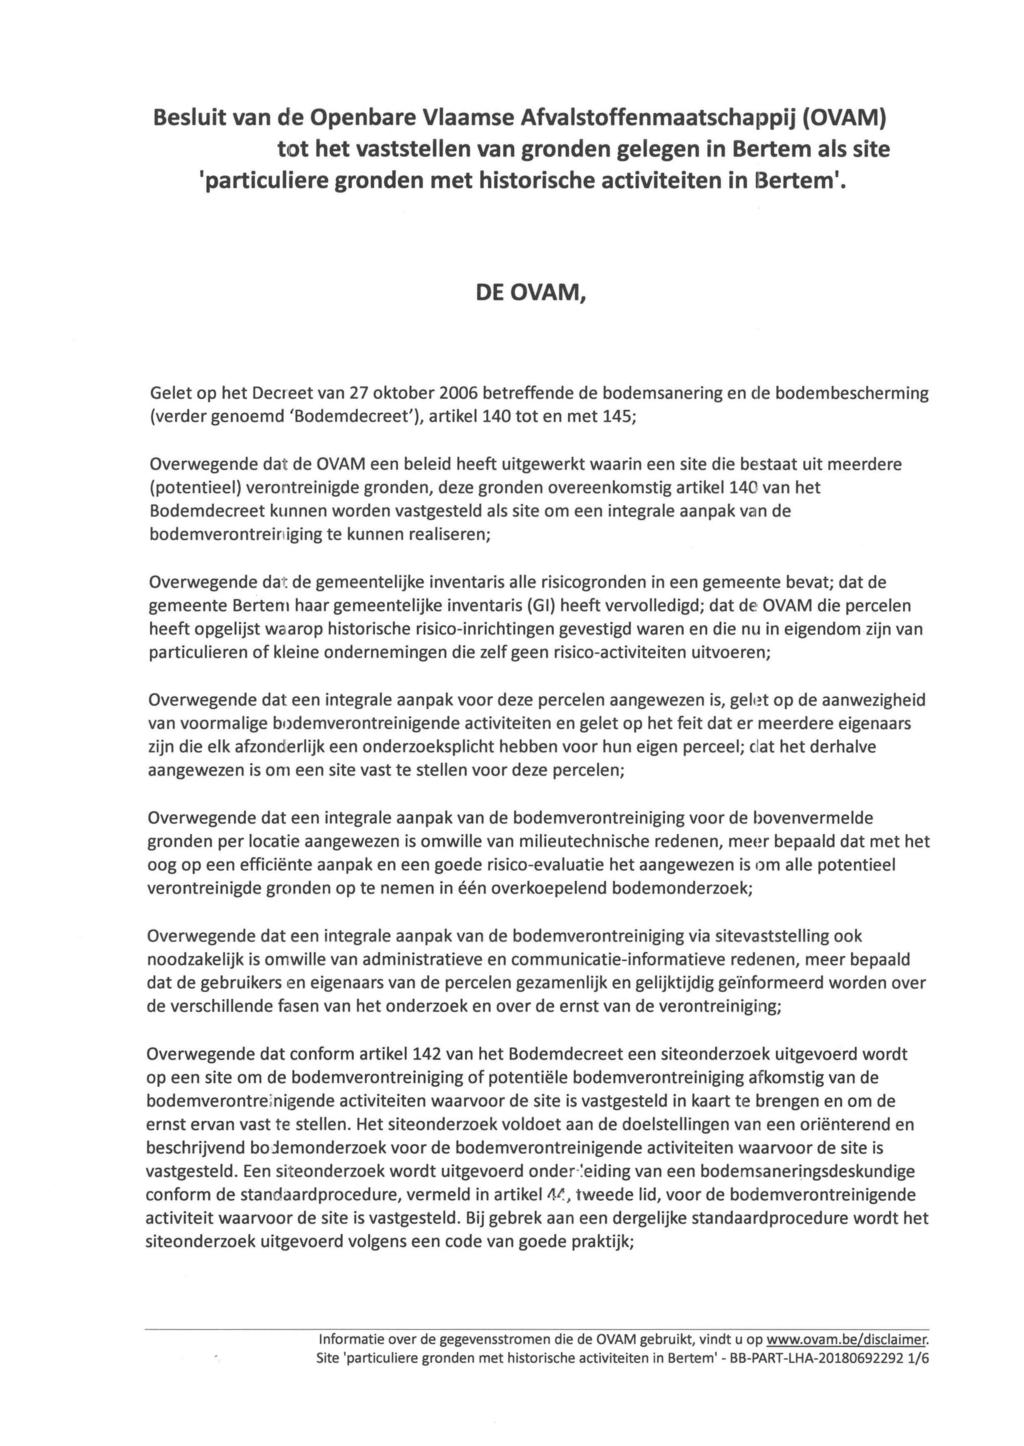 Besluit van de Openbare Vlaamse Afvalstoffenmaatschappij (OVAM) tot het vaststellen van gronden gelegen in Bertem als site 'particuliere gronden met historische activiteiten in Bertem'.